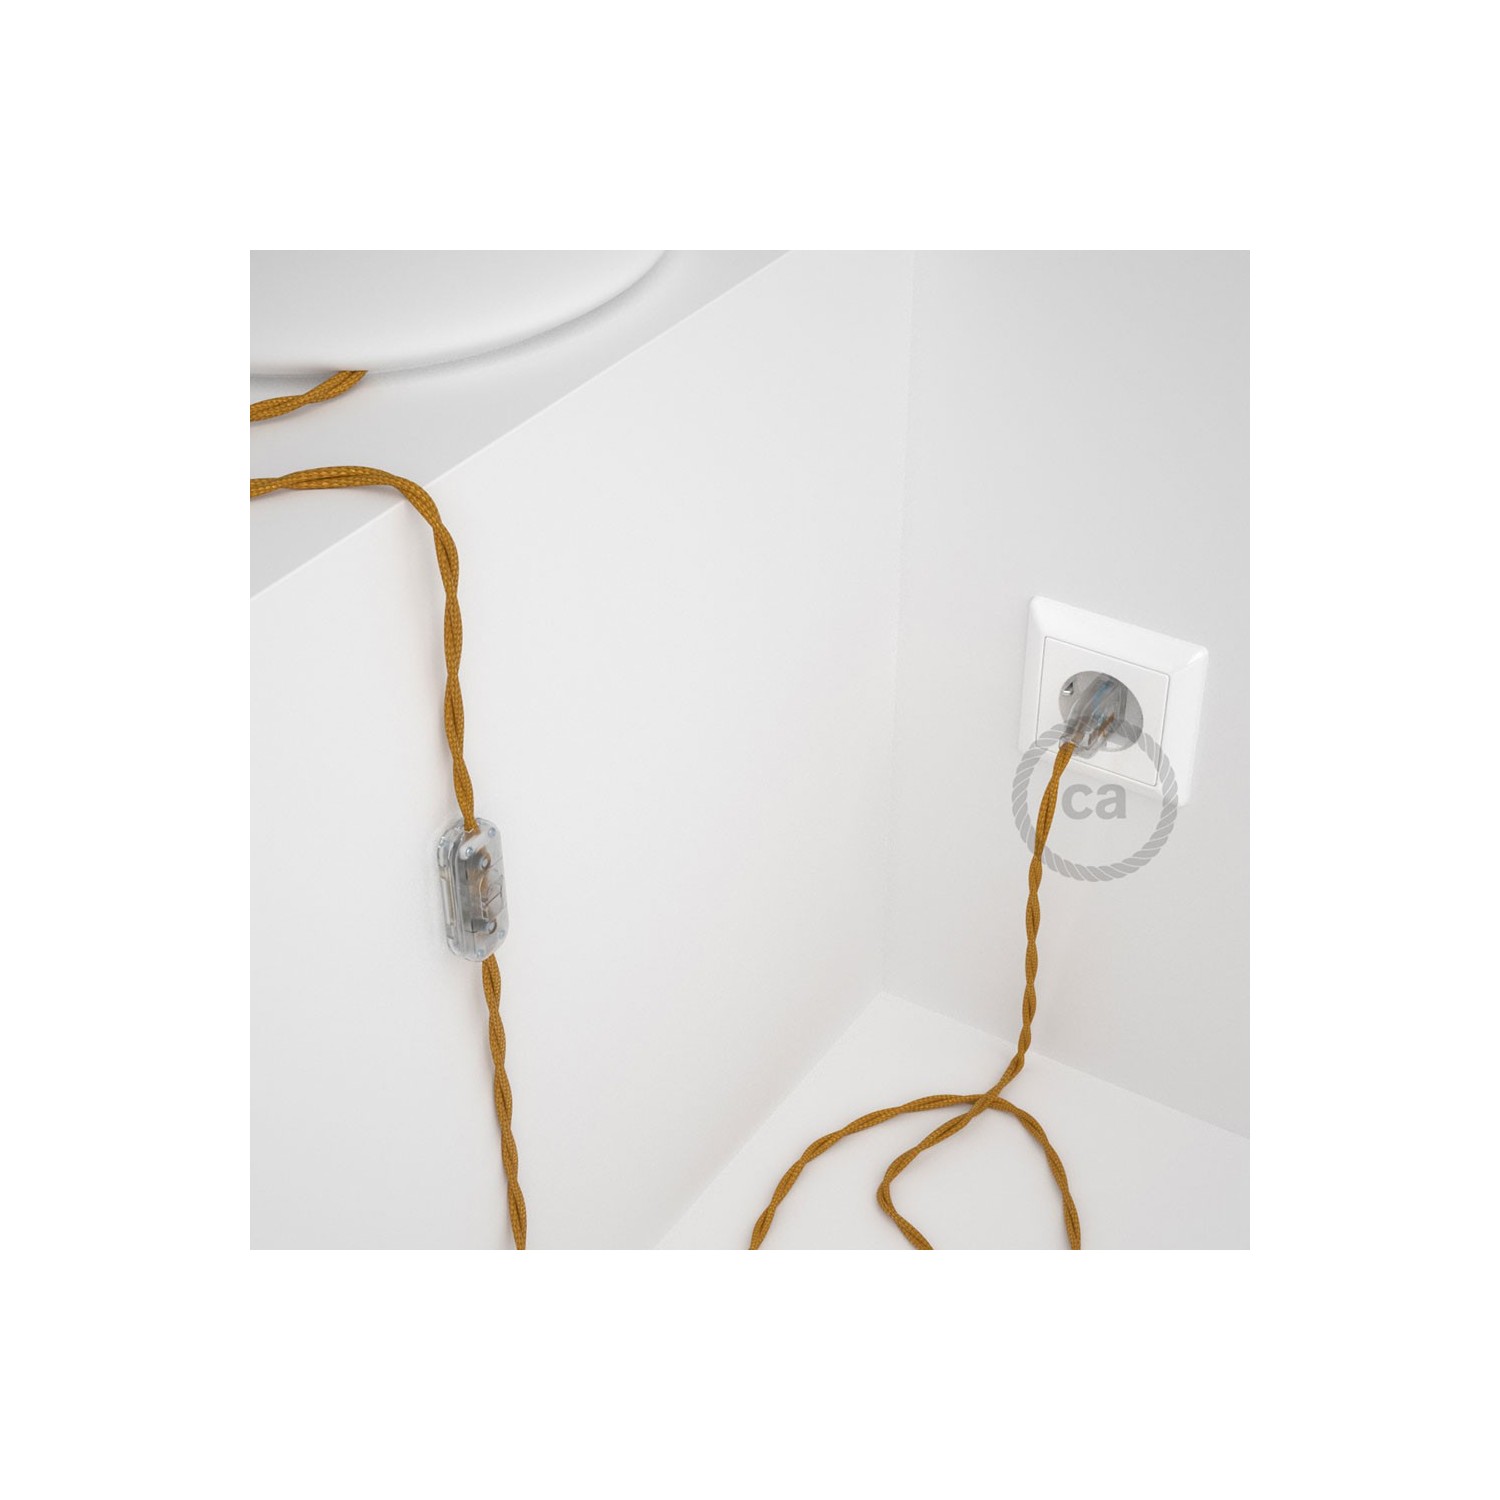 Cordon pour lampe, câble TM05 Effet Soie Doré 1,80 m. Choisissez la couleur de la fiche et de l'interrupteur!